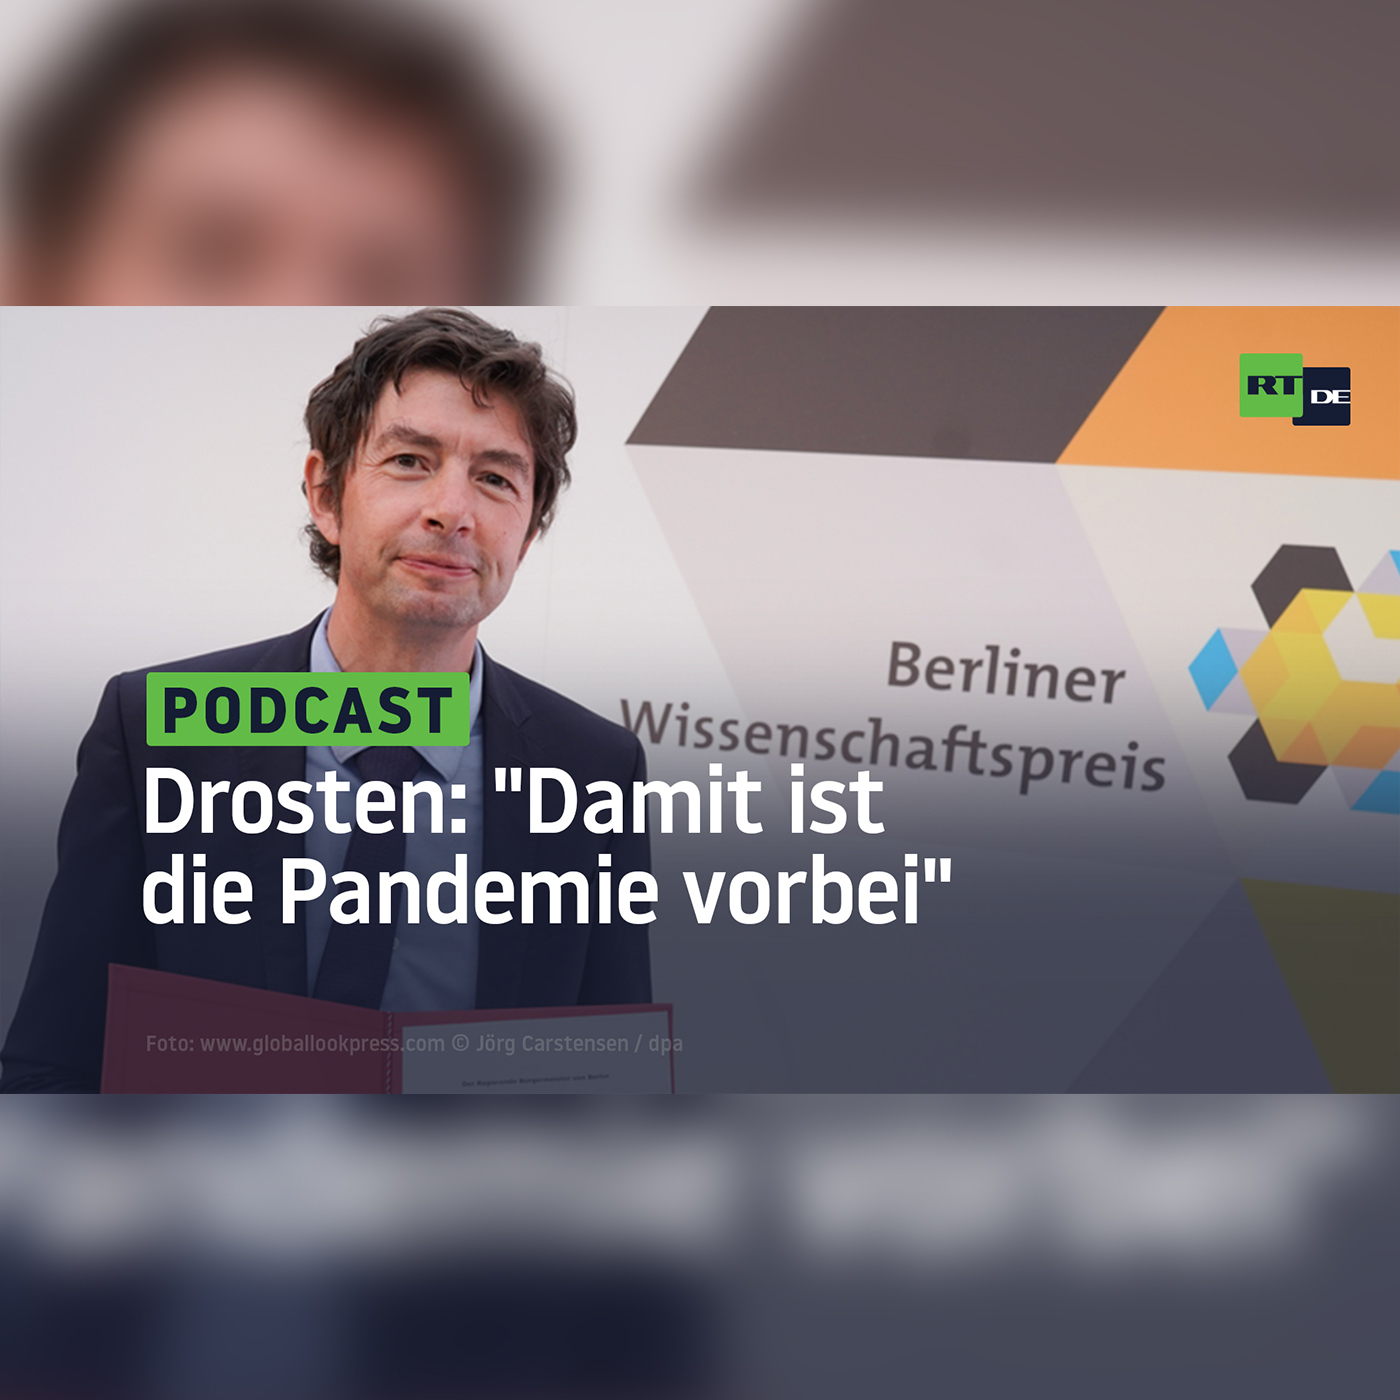 podcast_drosten_pandemie_vorbei_square7spon.jpeg